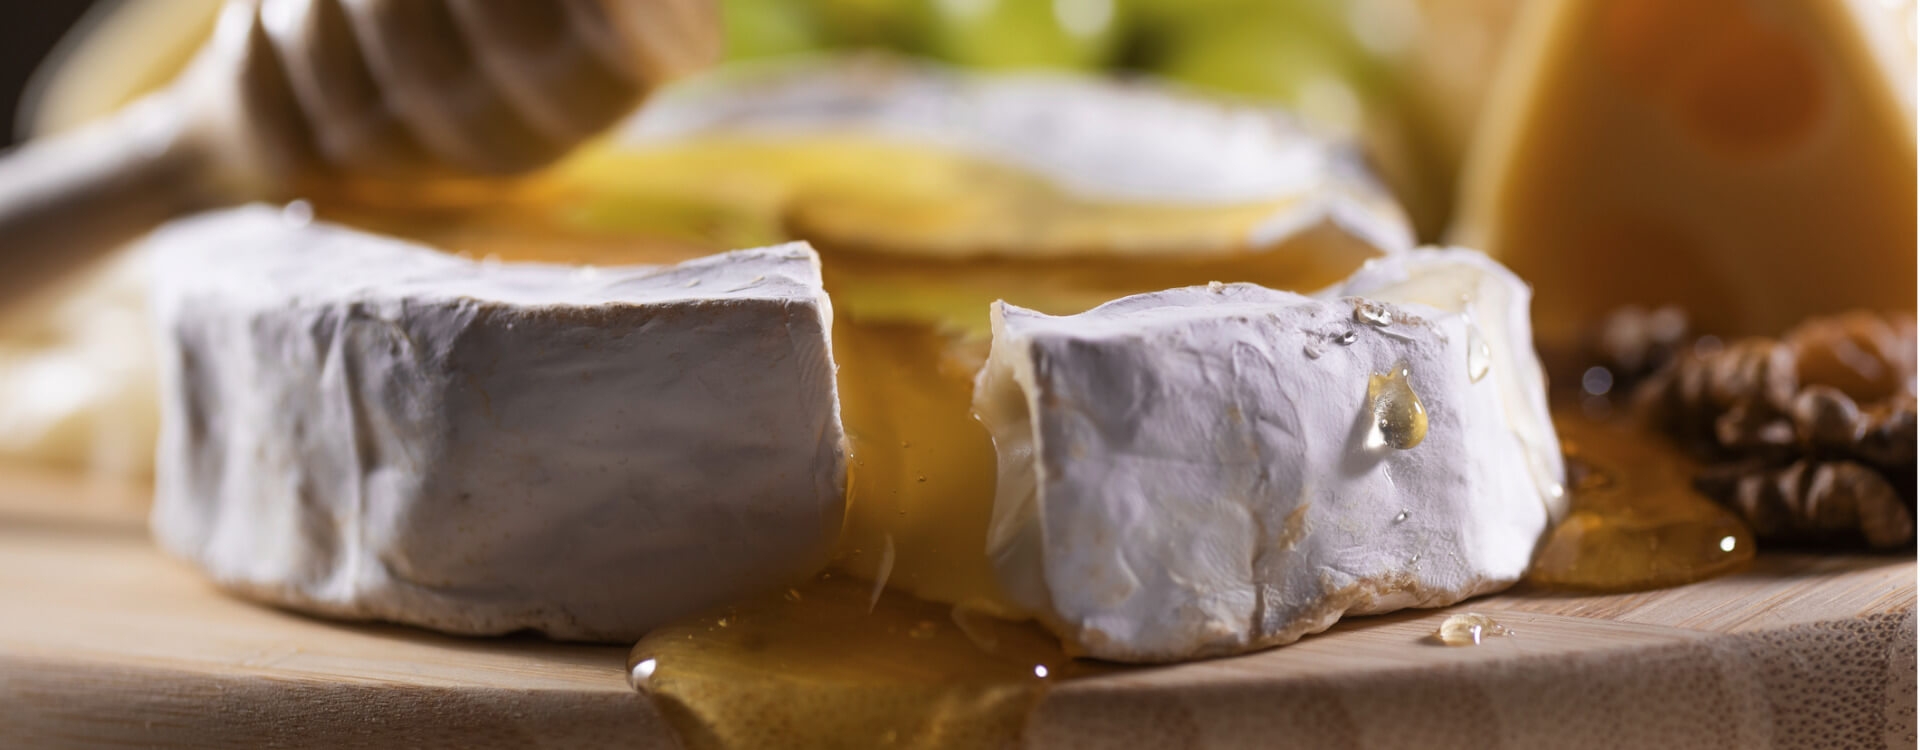 Italienischer Honig und Käse: reizvolle Geschmackskombinationen